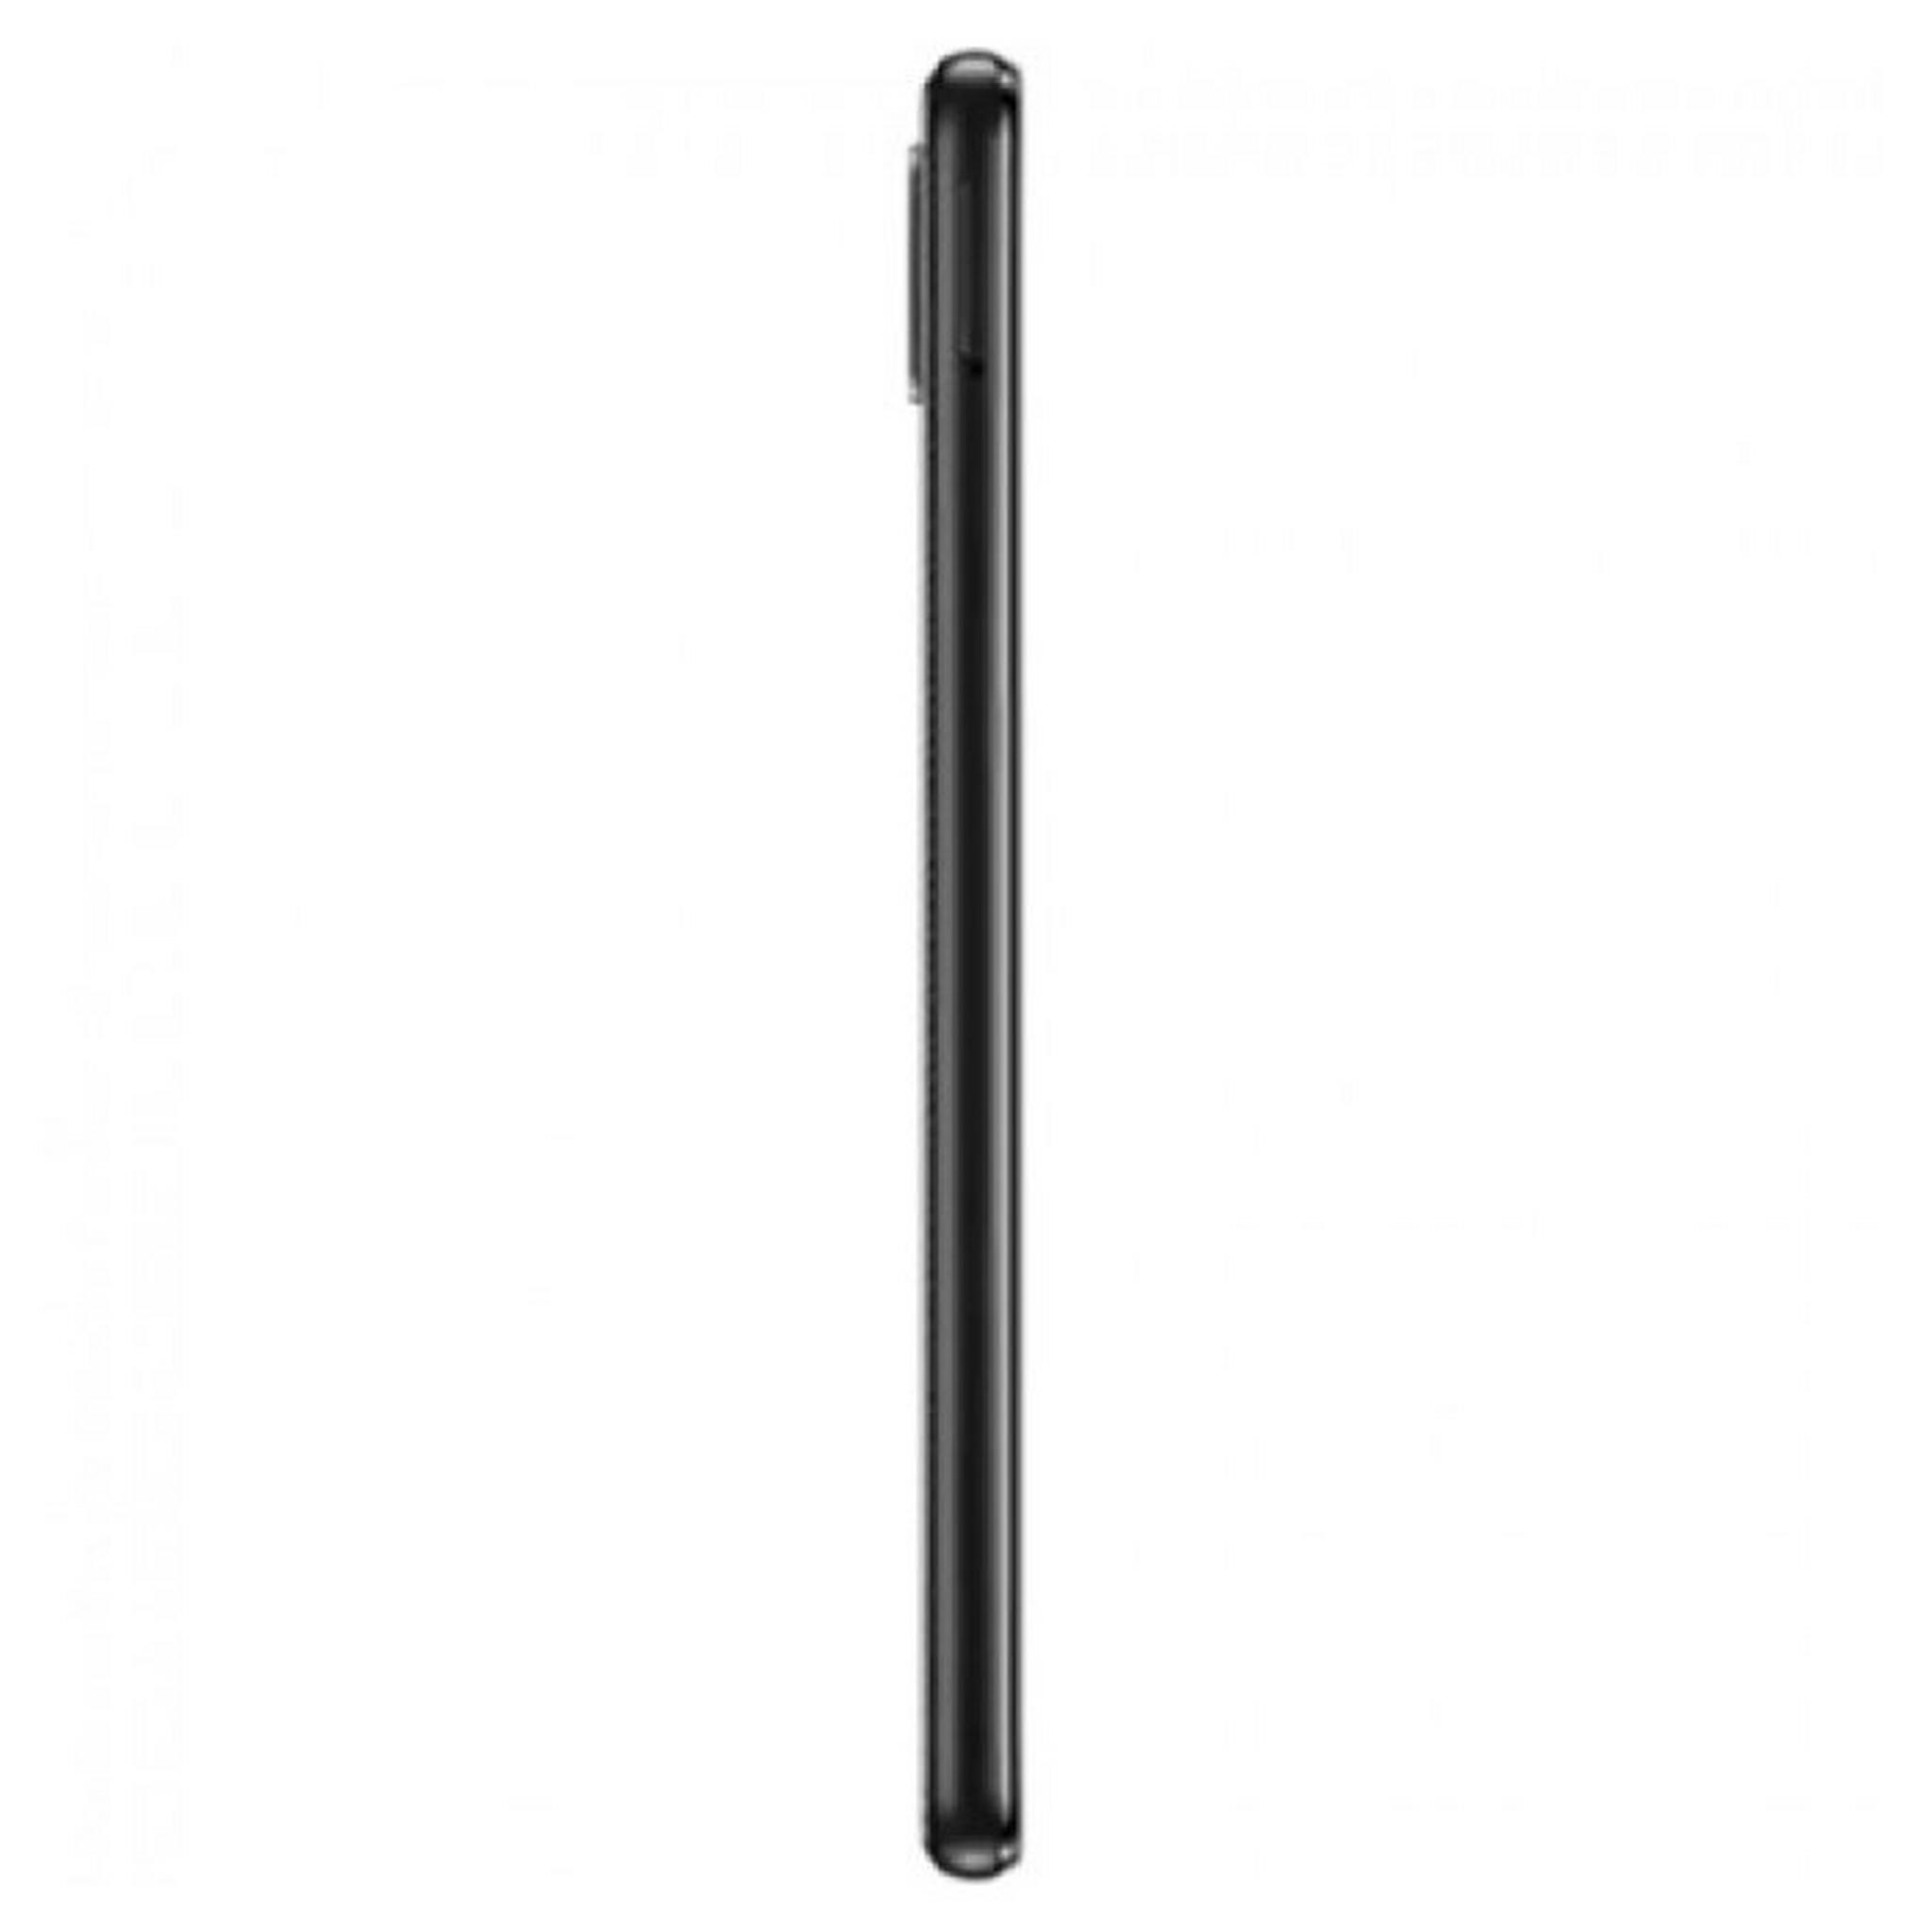 Samsung Galaxy A02 32GB Dual SIM - Black